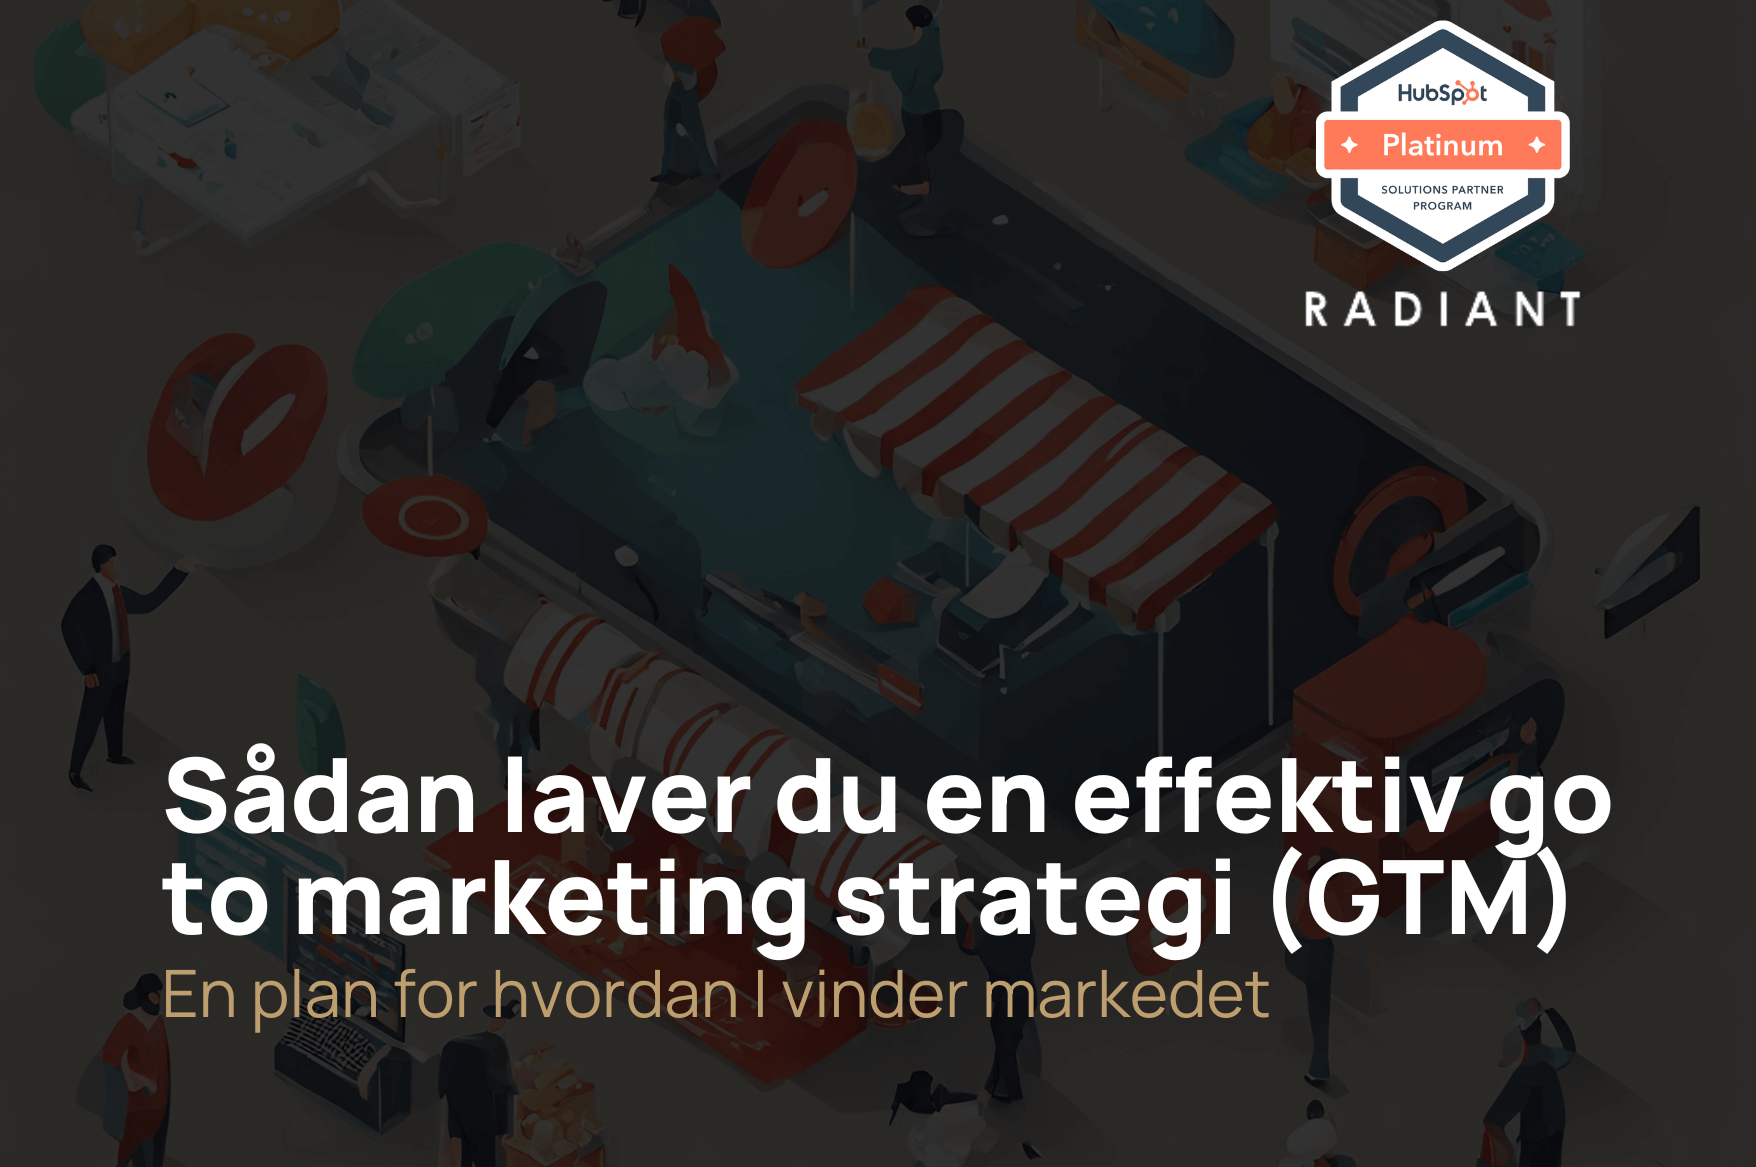 Guide: Hvad er en go-to-market (GTM) strategi? 